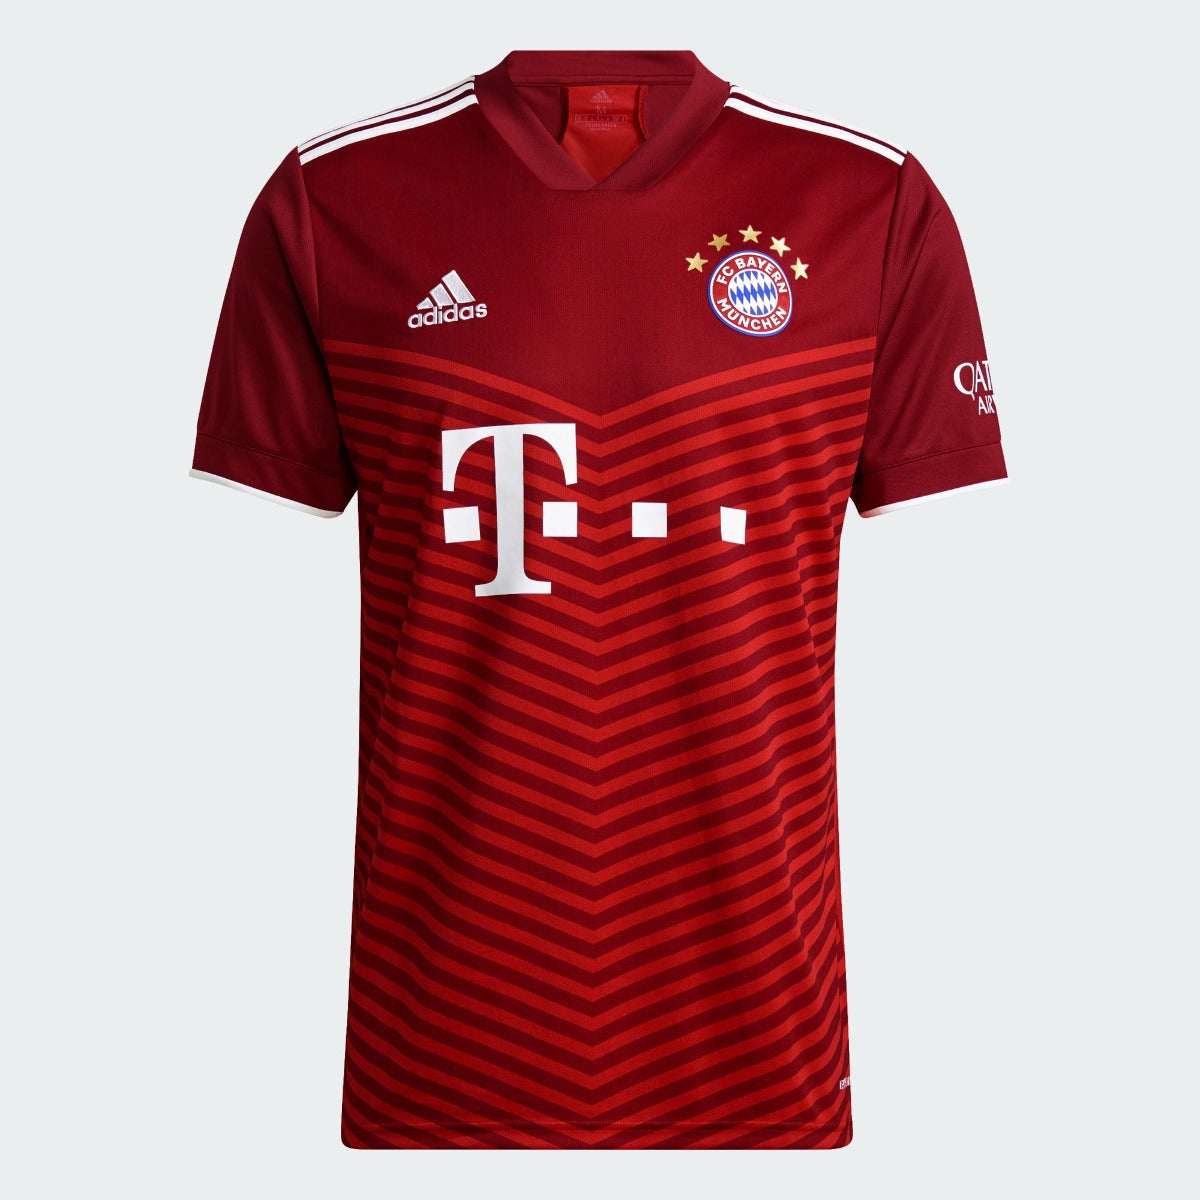 Adidas, Adidas 2021-22 Maglia home del Bayern Monaco - Rosso scuro